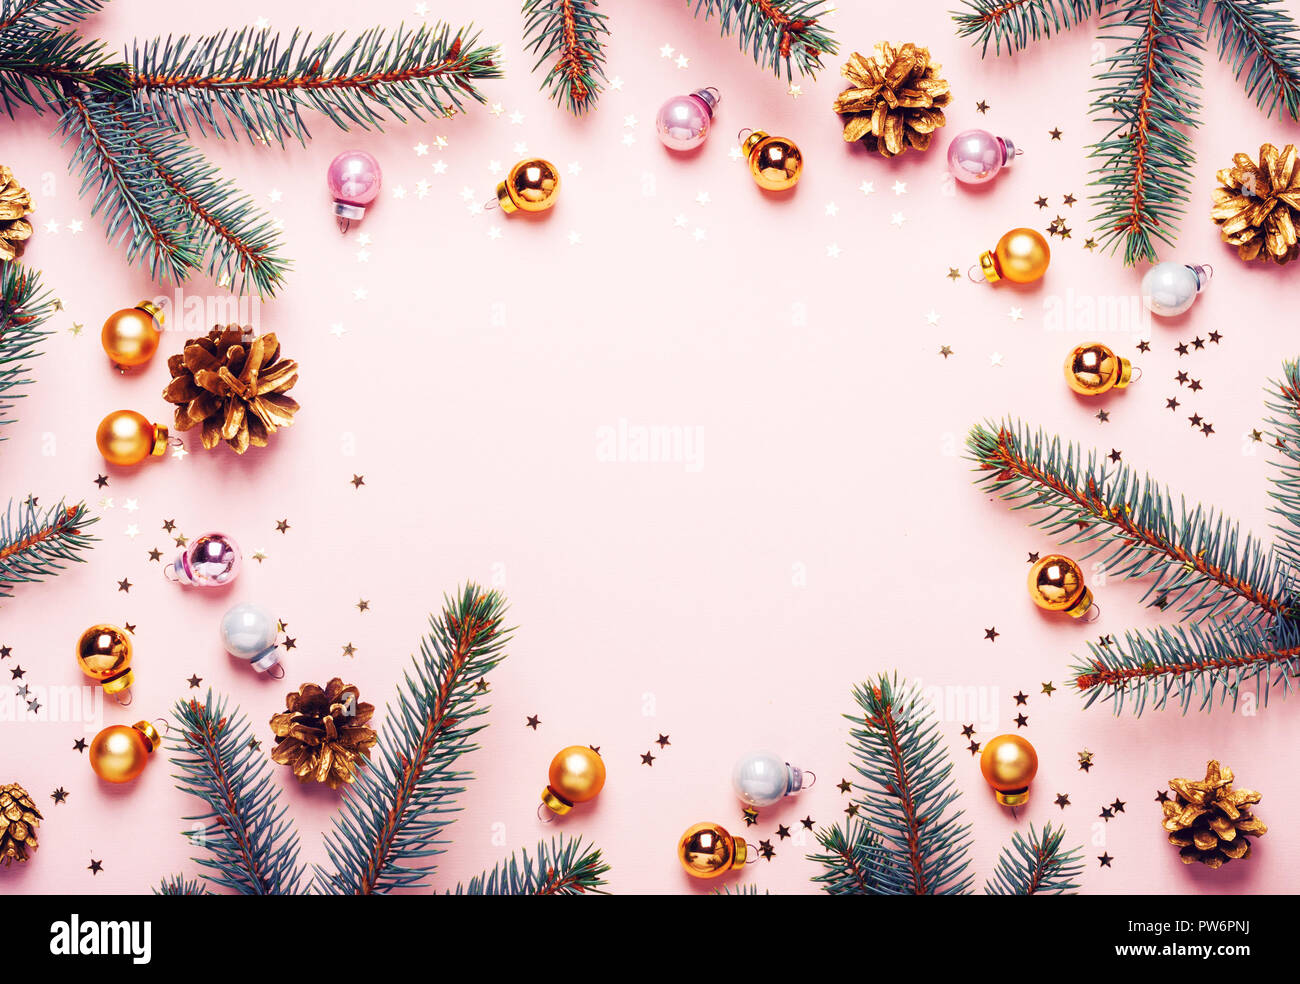 Nền Noel hồng pastel: Hãy khám phá vẻ đẹp đầy ngọt ngào của Nền Noel hồng pastel. Với màu sắc tươi trẻ và trang trí Noel đầy lãng mạn, hình ảnh này sẽ khiến bạn muốn đắm chìm trong không khí lễ hội. Hãy để cho Nền Noel hồng pastel đưa bạn trở về tuổi thơ ngây ngô nhé!